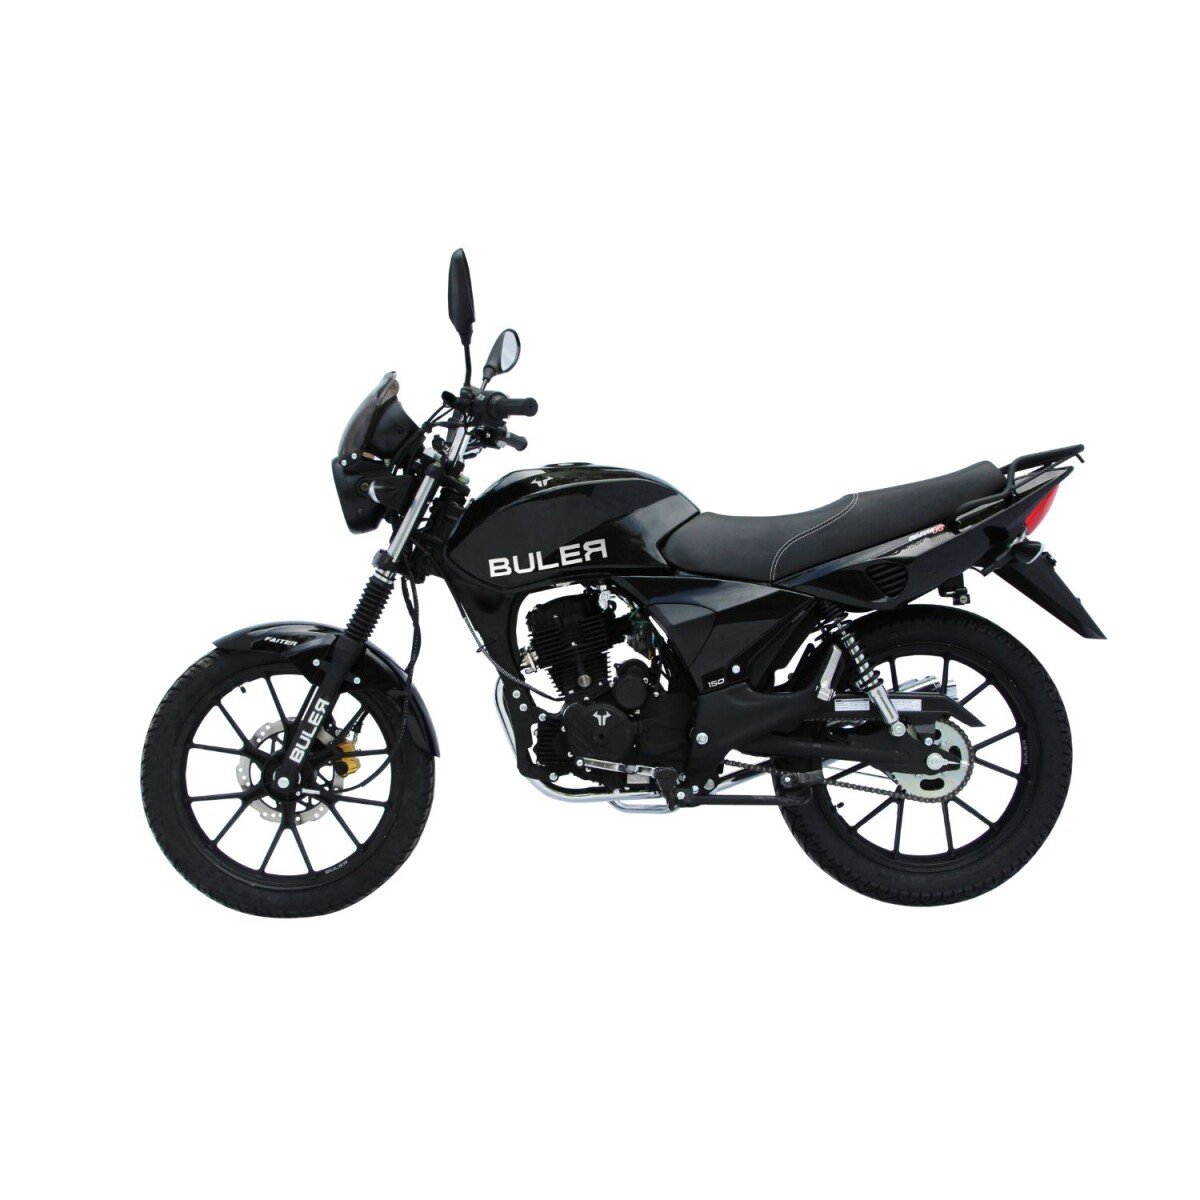 Motocicleta Buler Faiter 150cc Aleación - Negro 